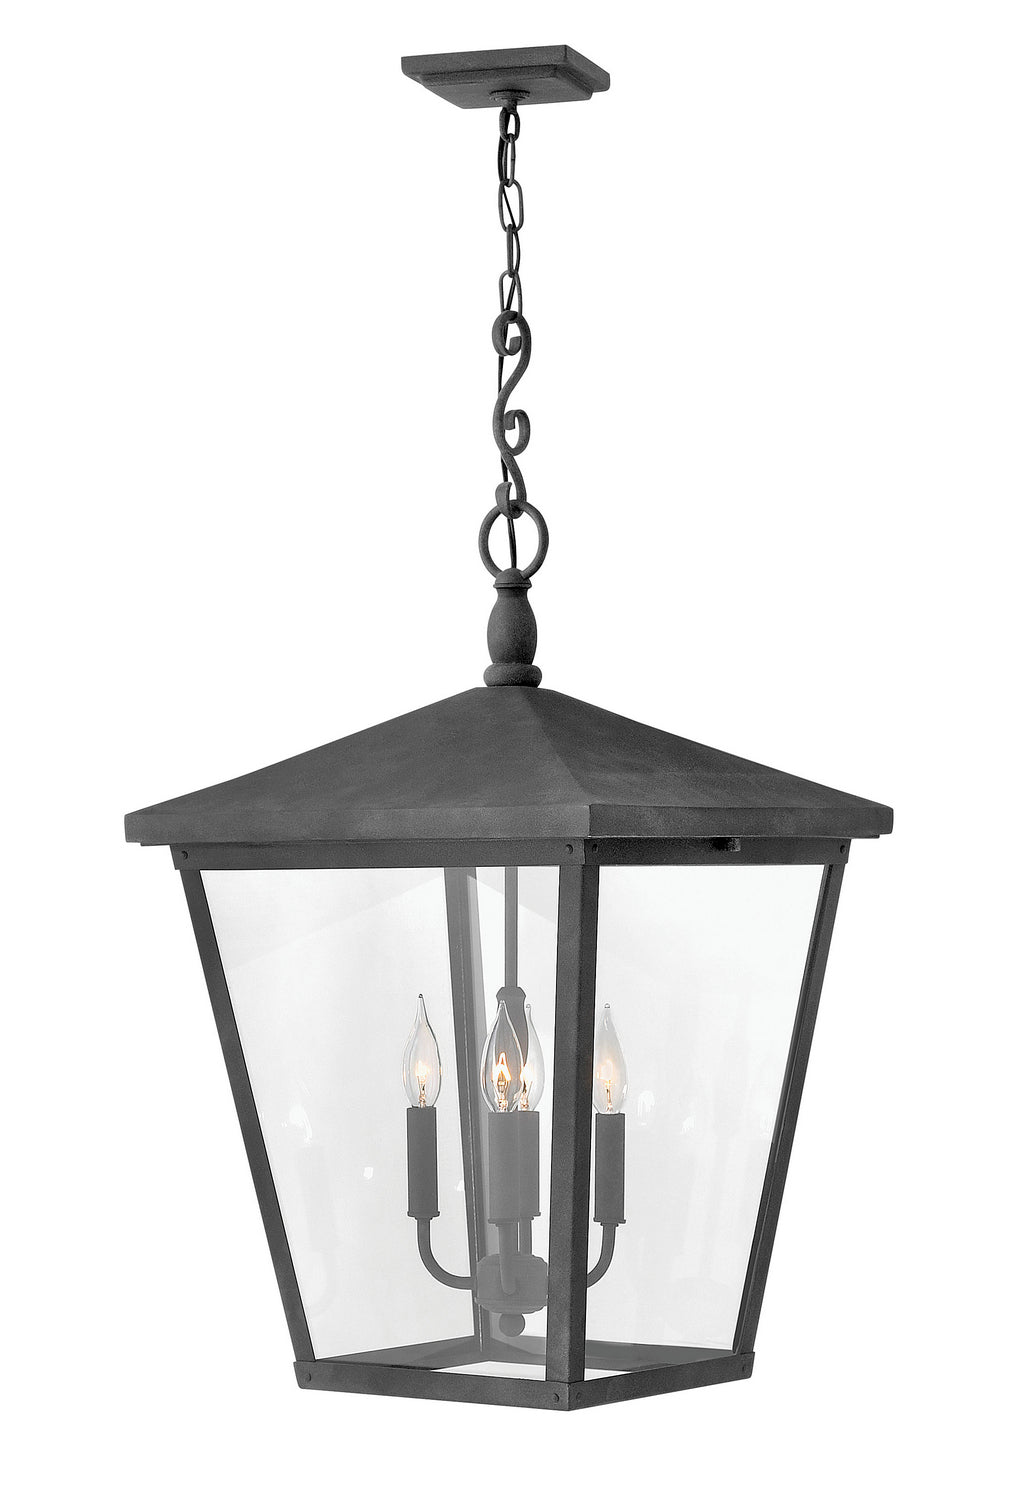 Hinkley - 1428DZ - LED Hanging Lantern - Trellis - Aged Zinc